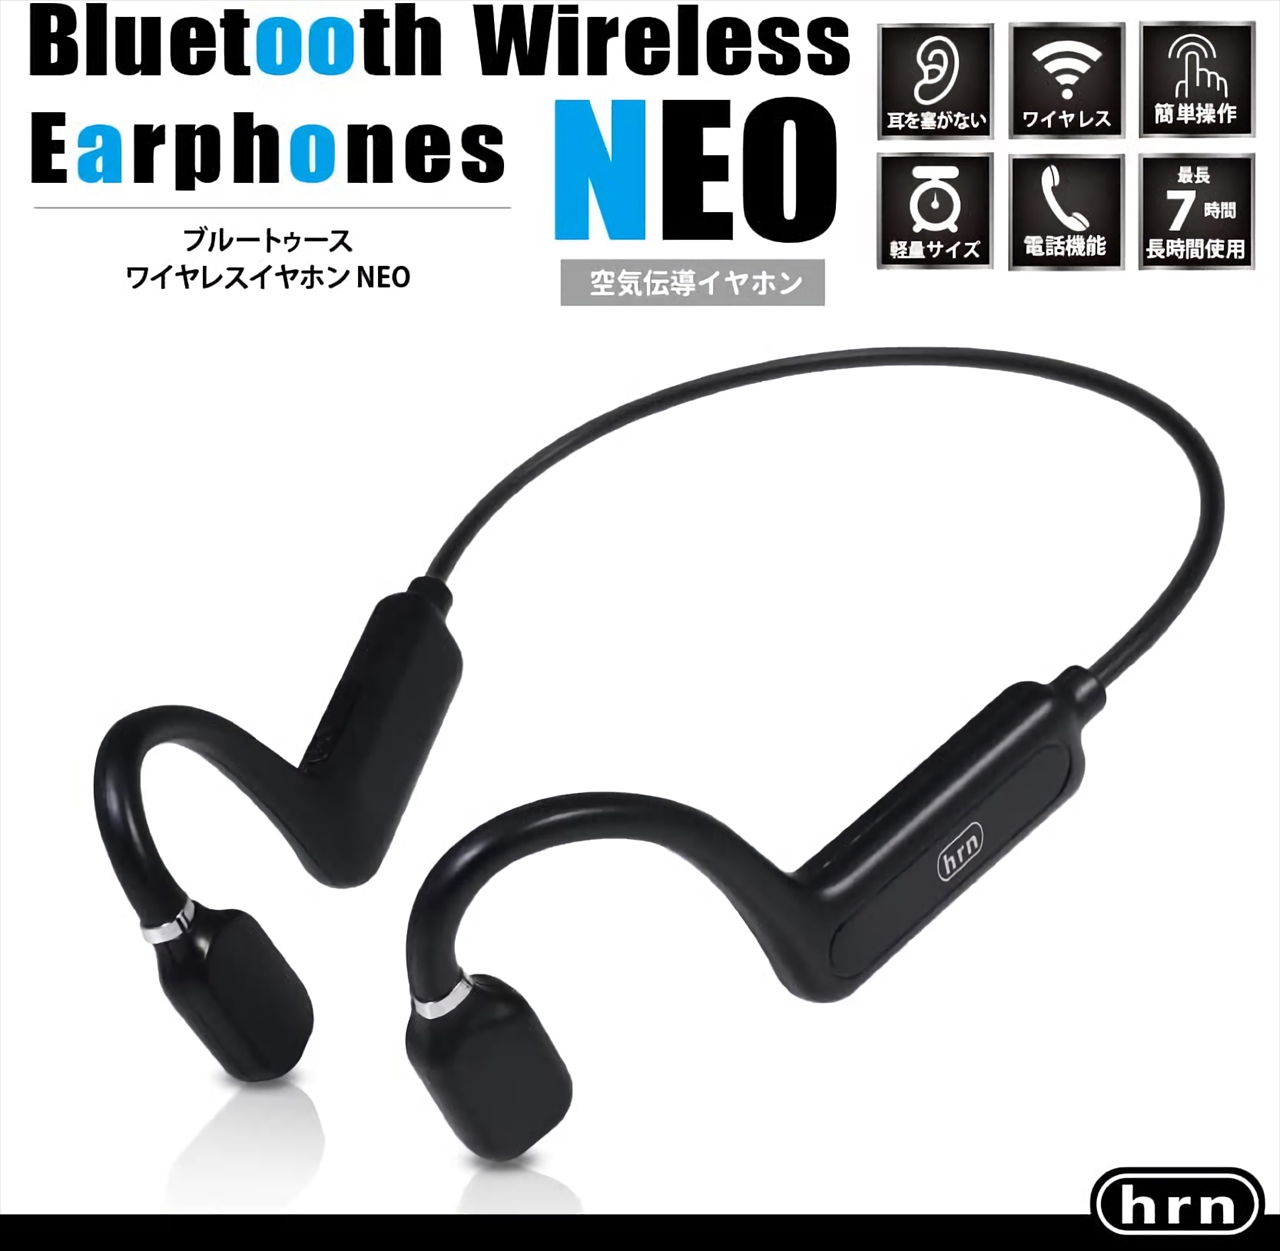 Bluetoothワイヤレスイヤホン HRN-568 耳をふさがないオープン